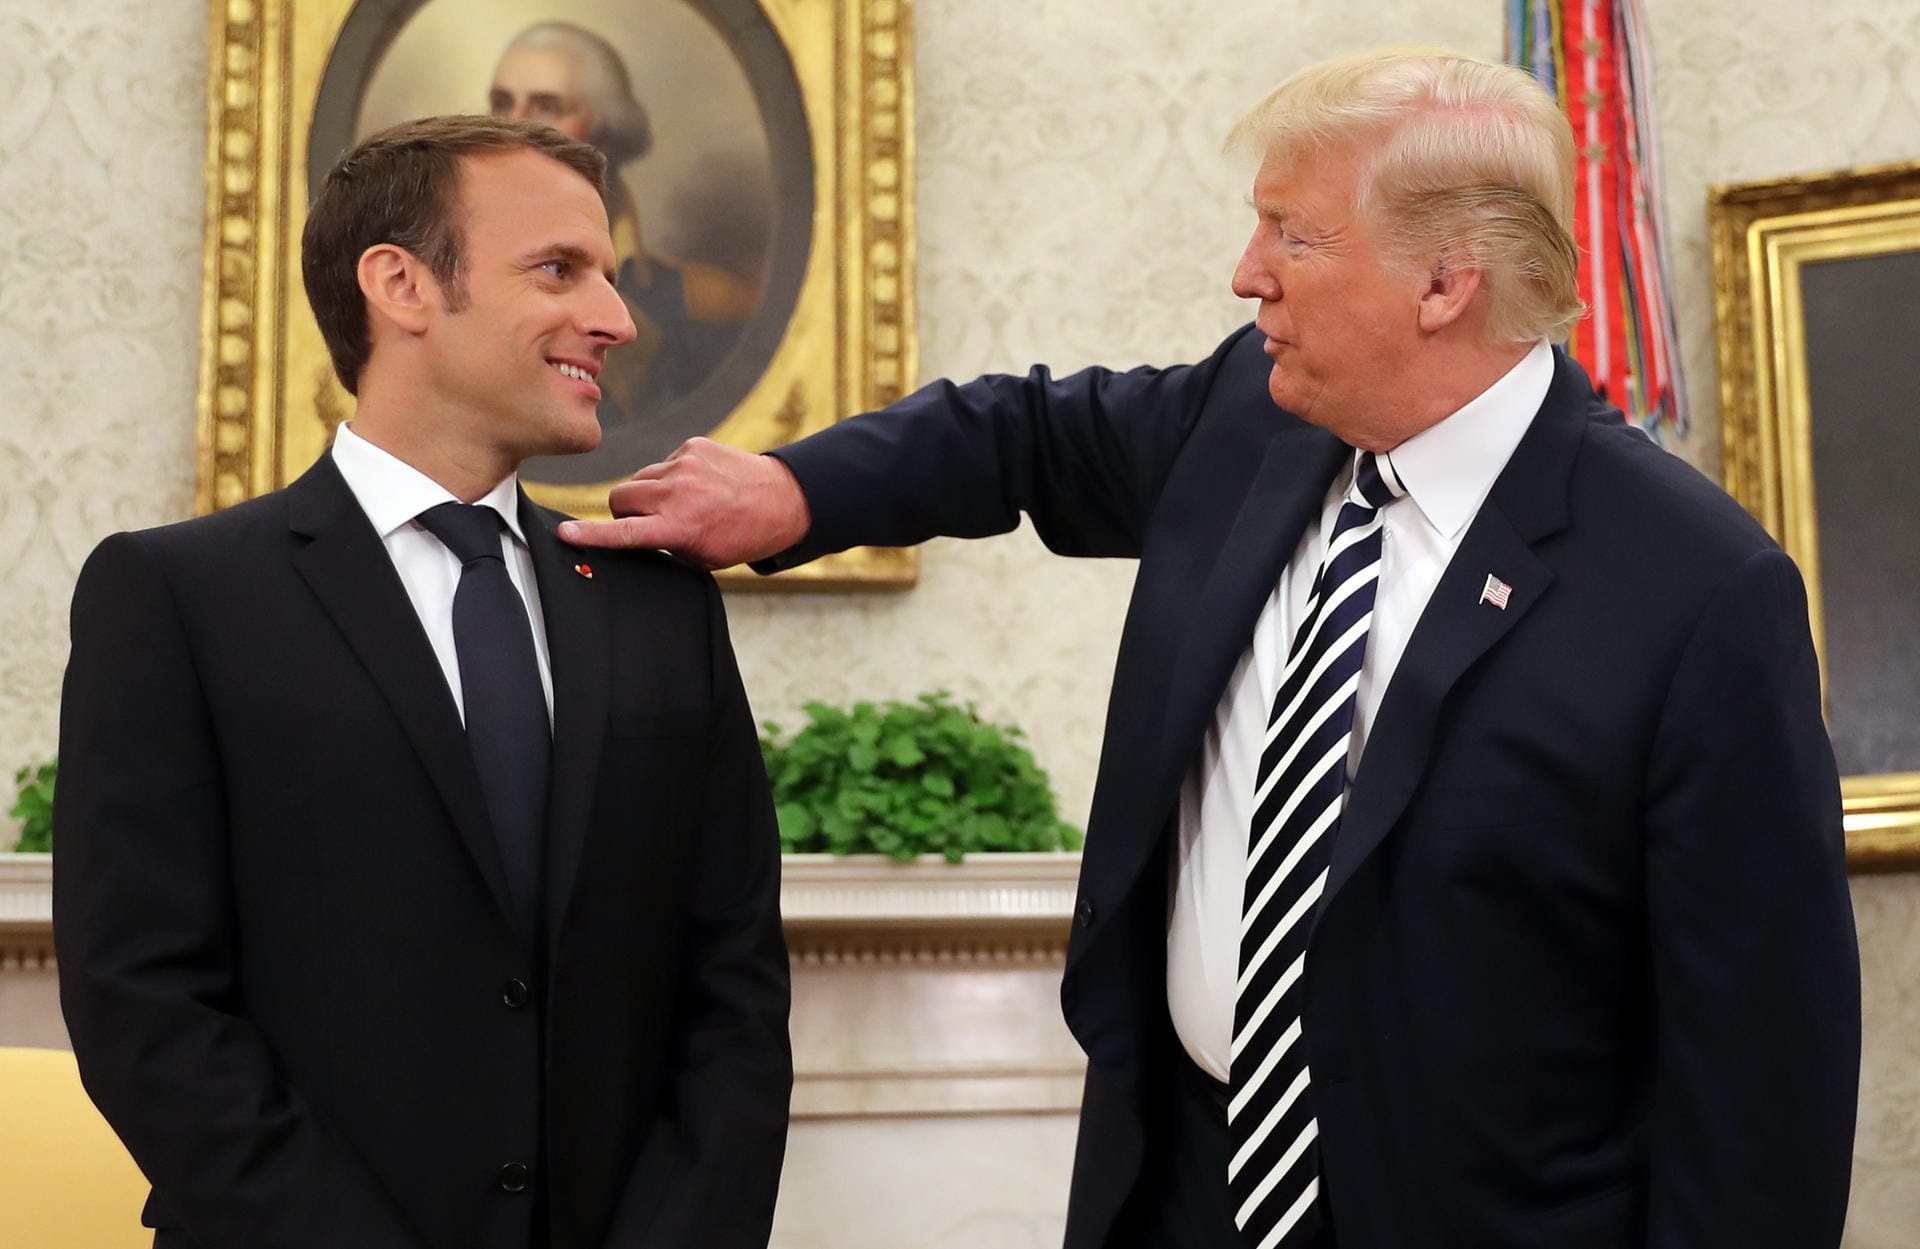 Französischer Präsident zu Besuch in den USA am 24. April 2018: Trump zeigt während Macrons US-Reise viel Empathie. Bei einem Fototermin wischt Trump Macron die Schuppen vom Anzug. Der Franzose nimmt es gelassen.